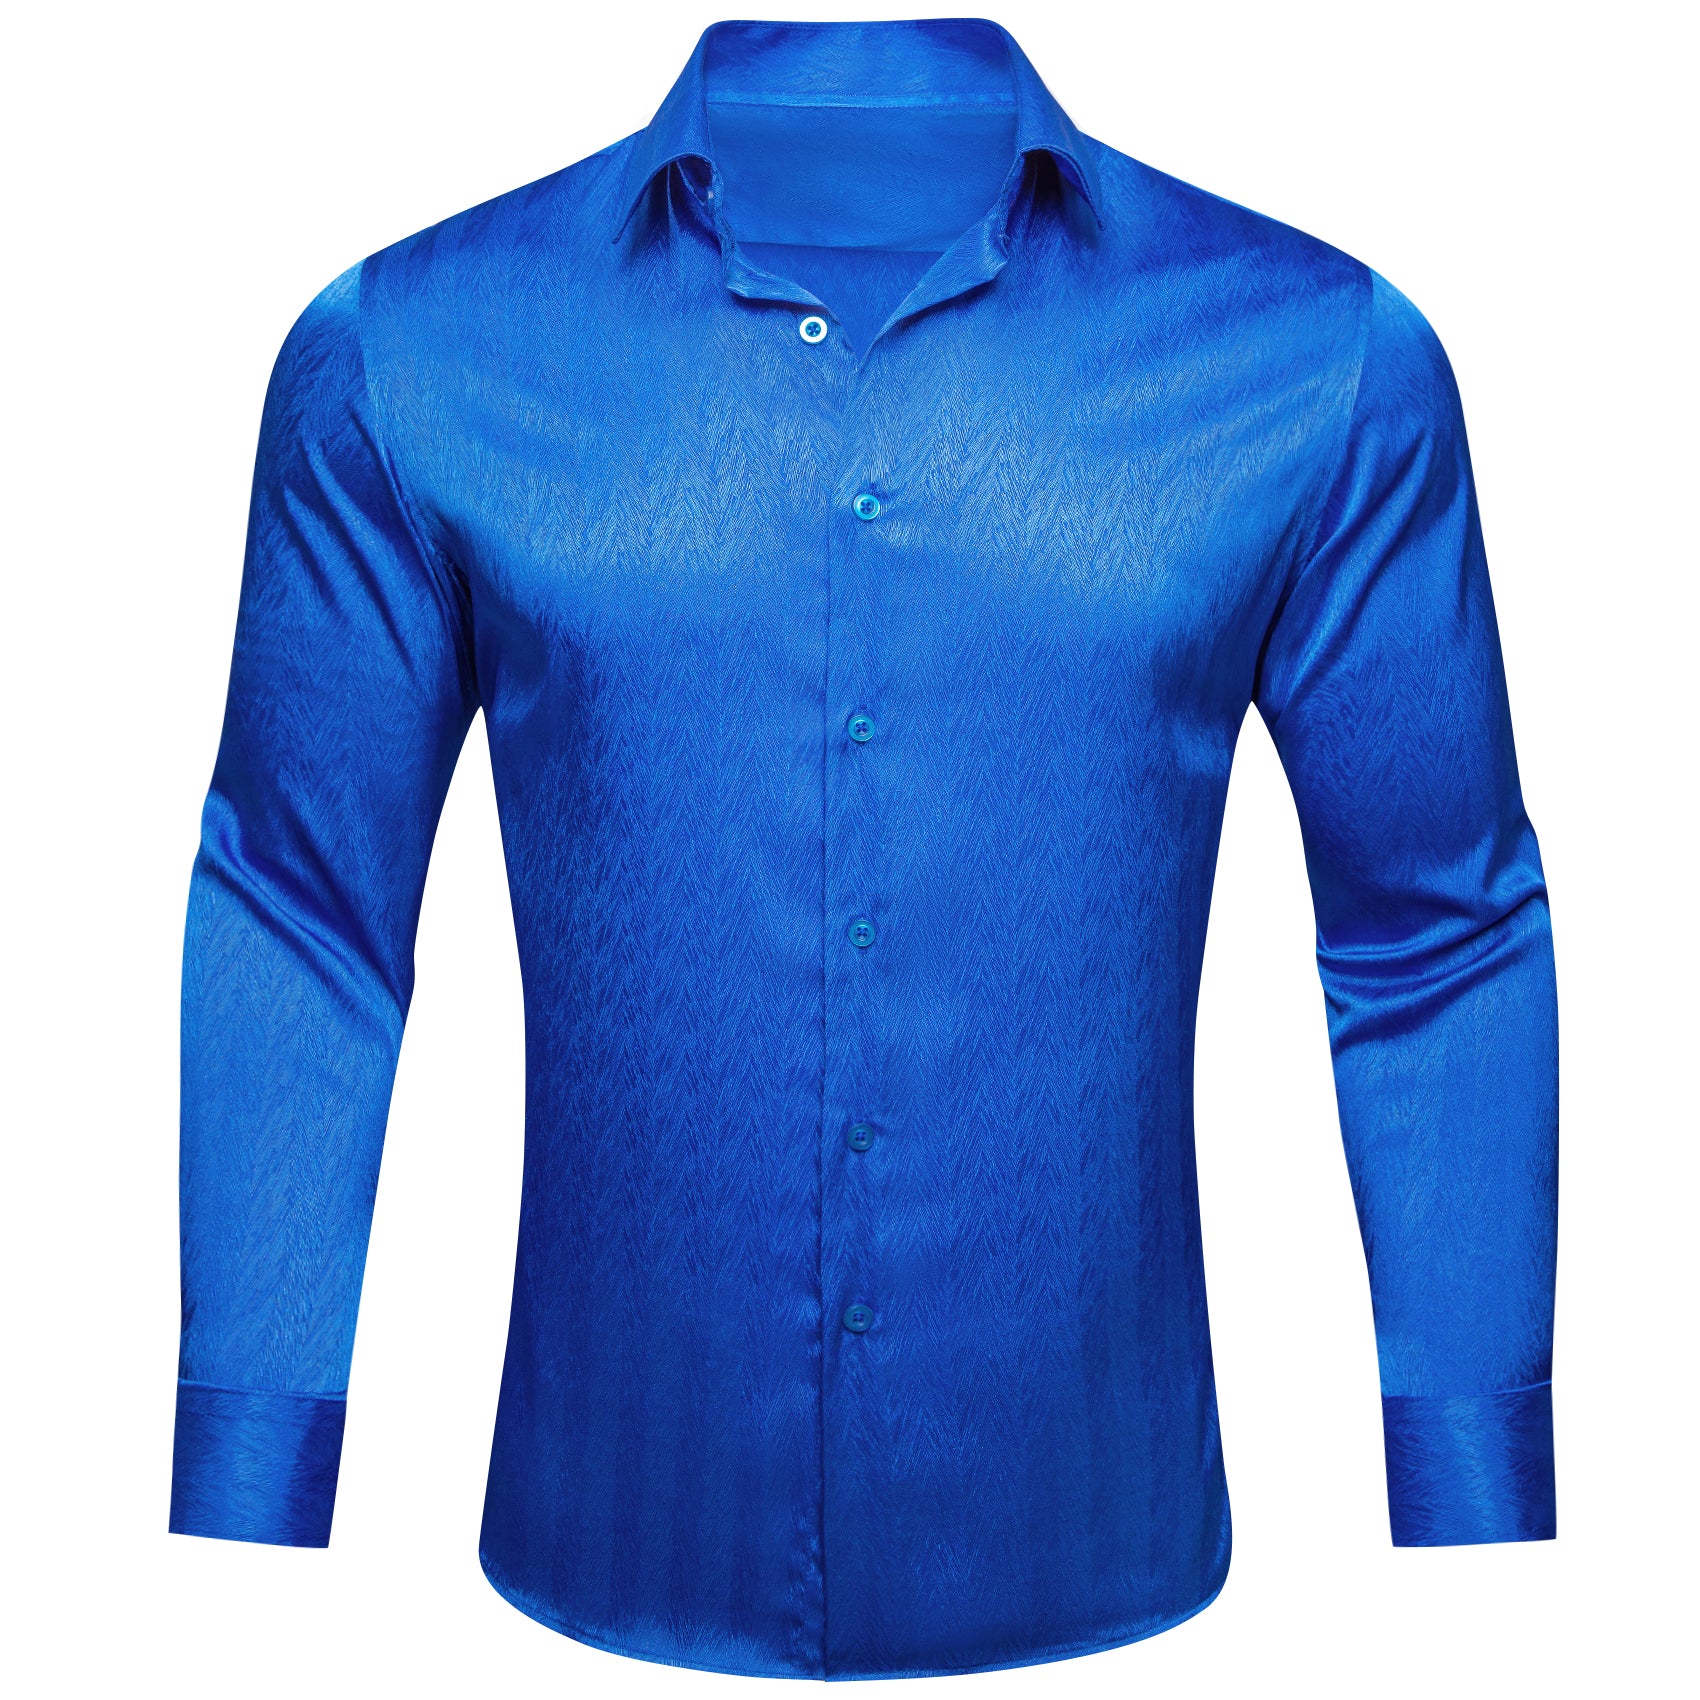 Barry.wang Button Down Shirt Cobalt Blue Solid Silk Men's long sleeve Shirt